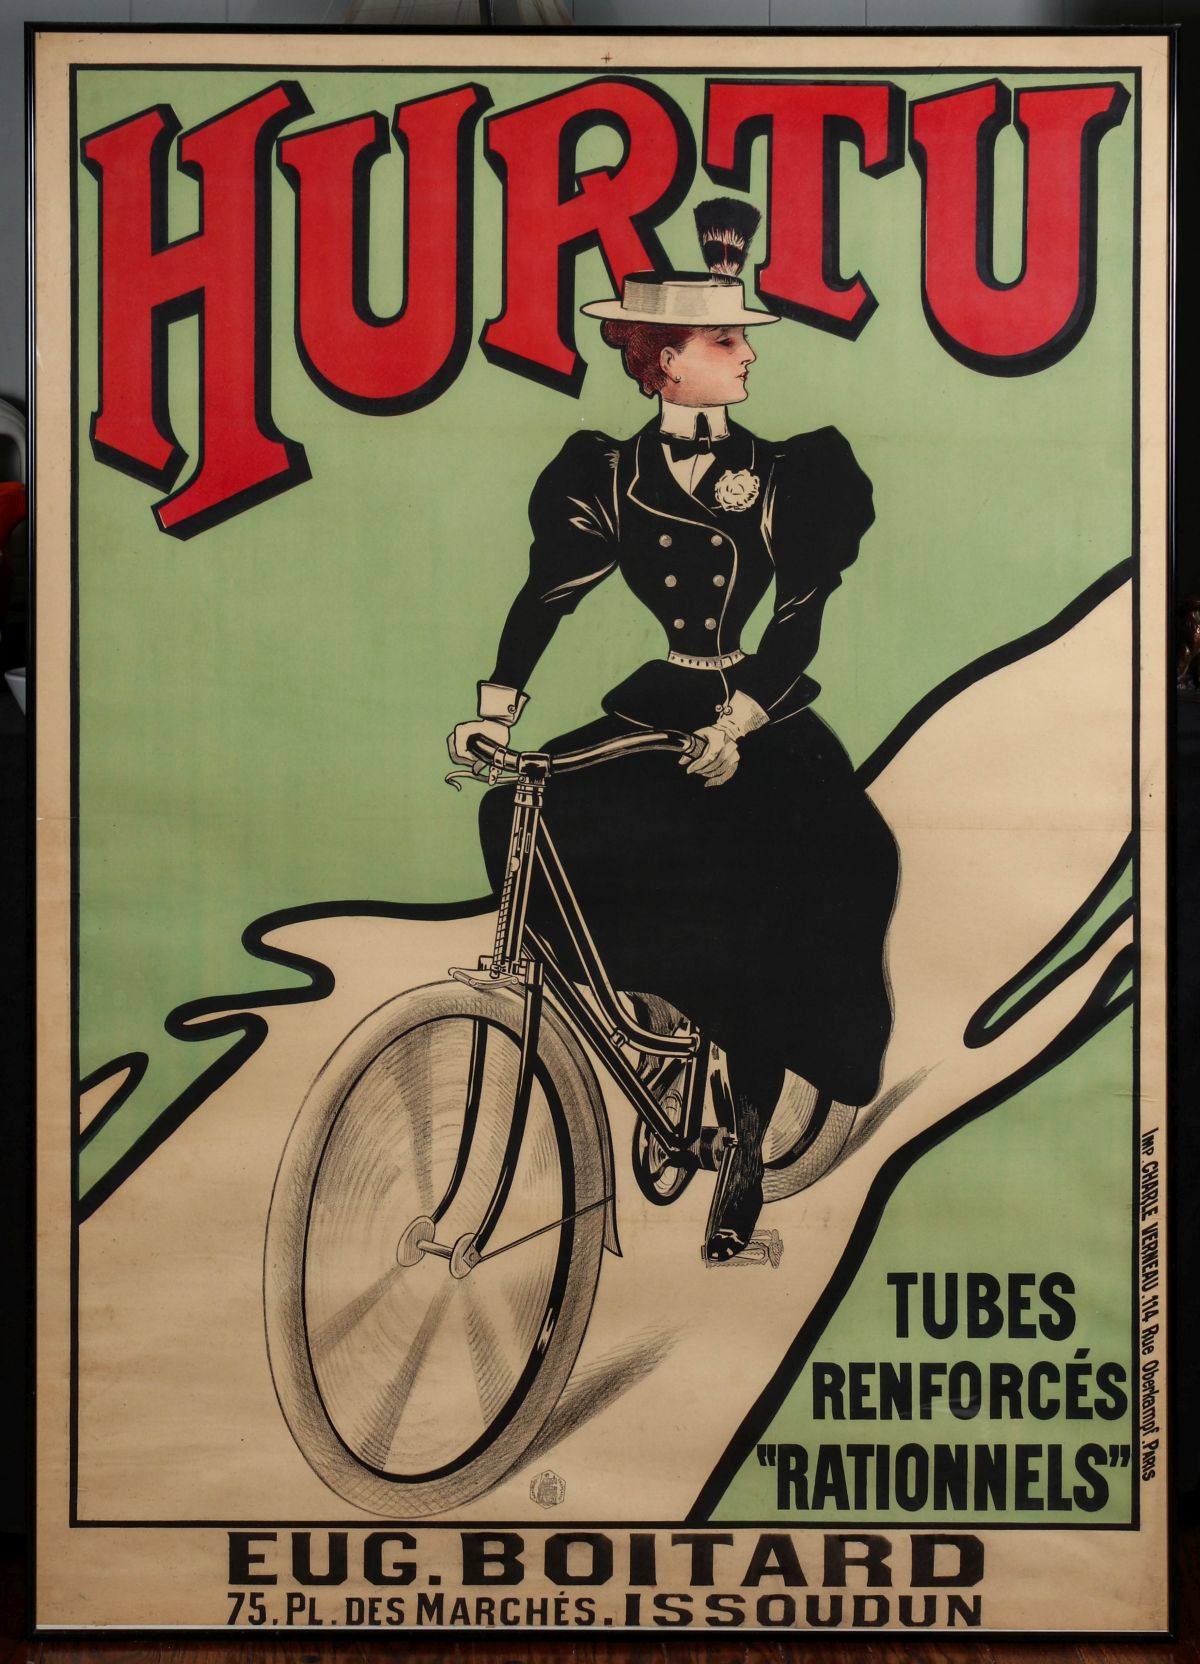 HURTU BICYCLES FRENCH ADVERTISING POSTER C. 1890